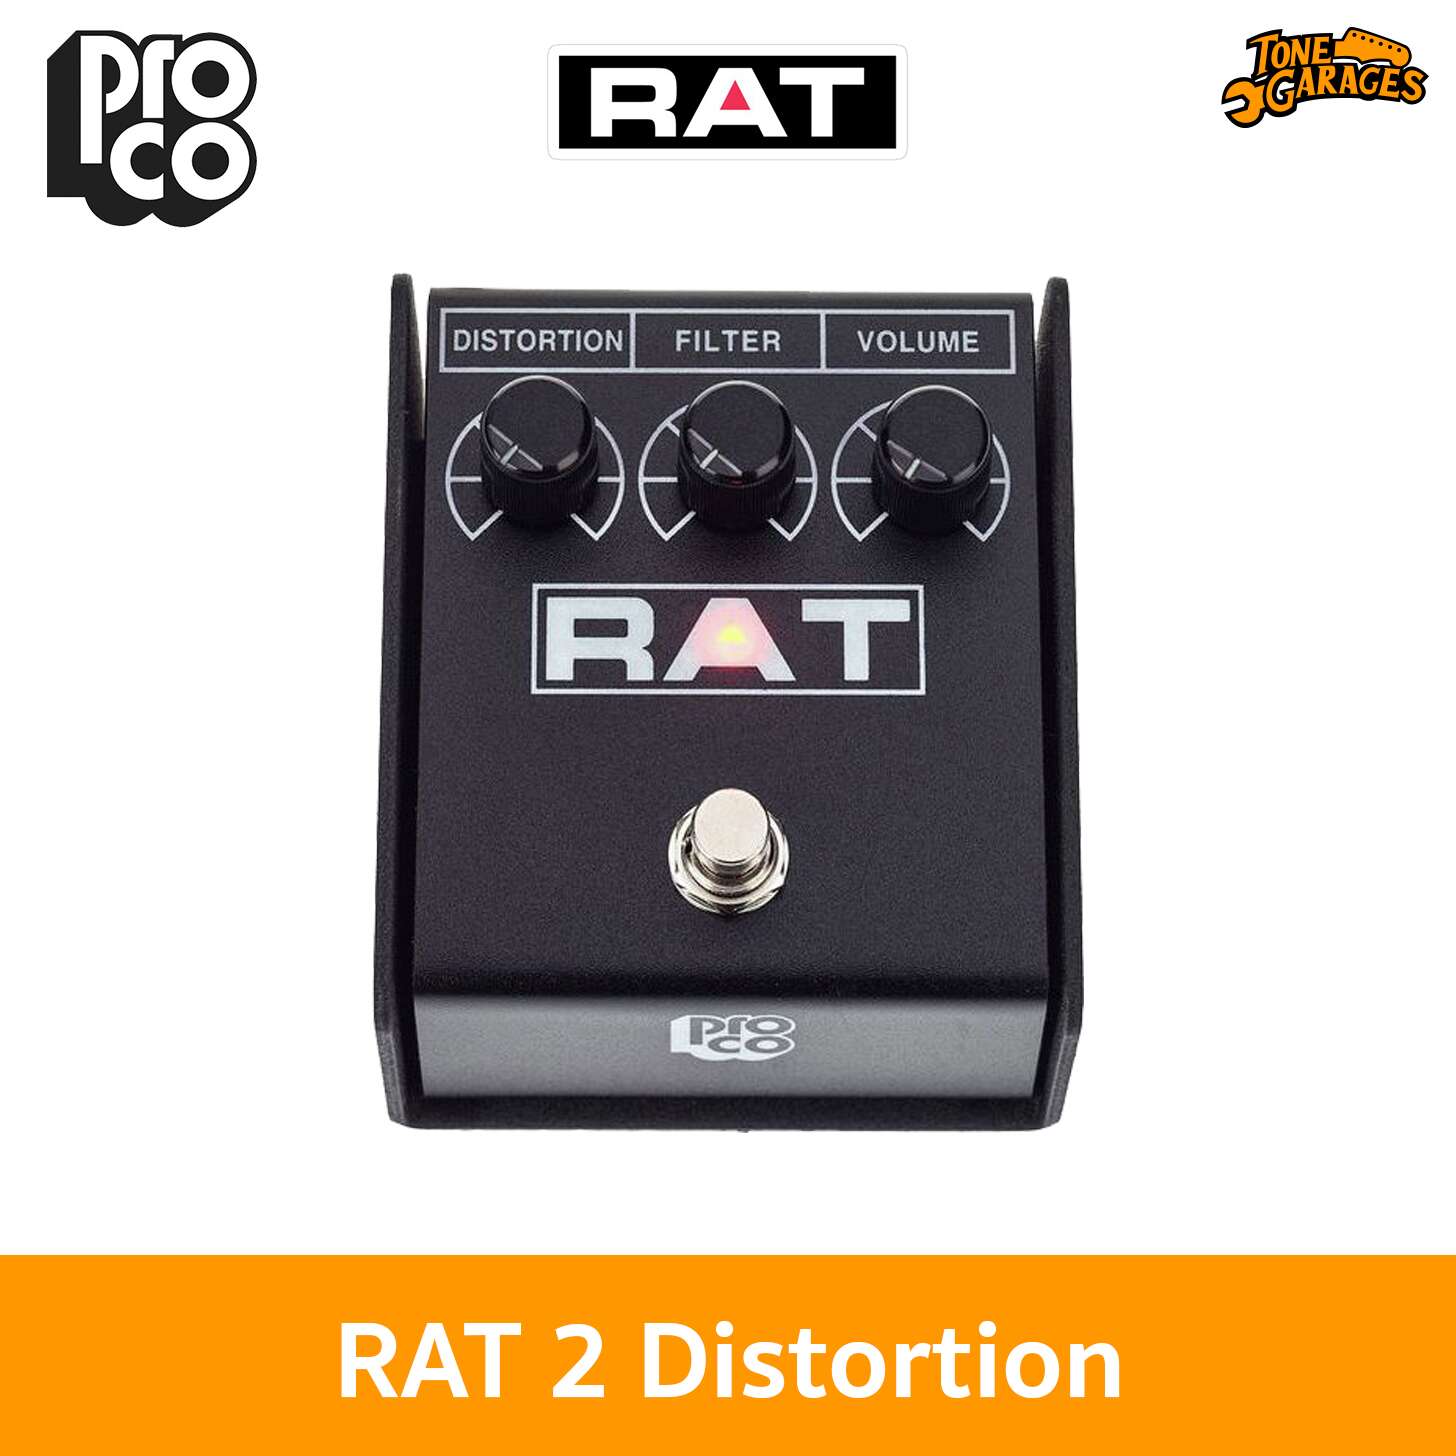 Proco RAT 2 ディストーション - 器材